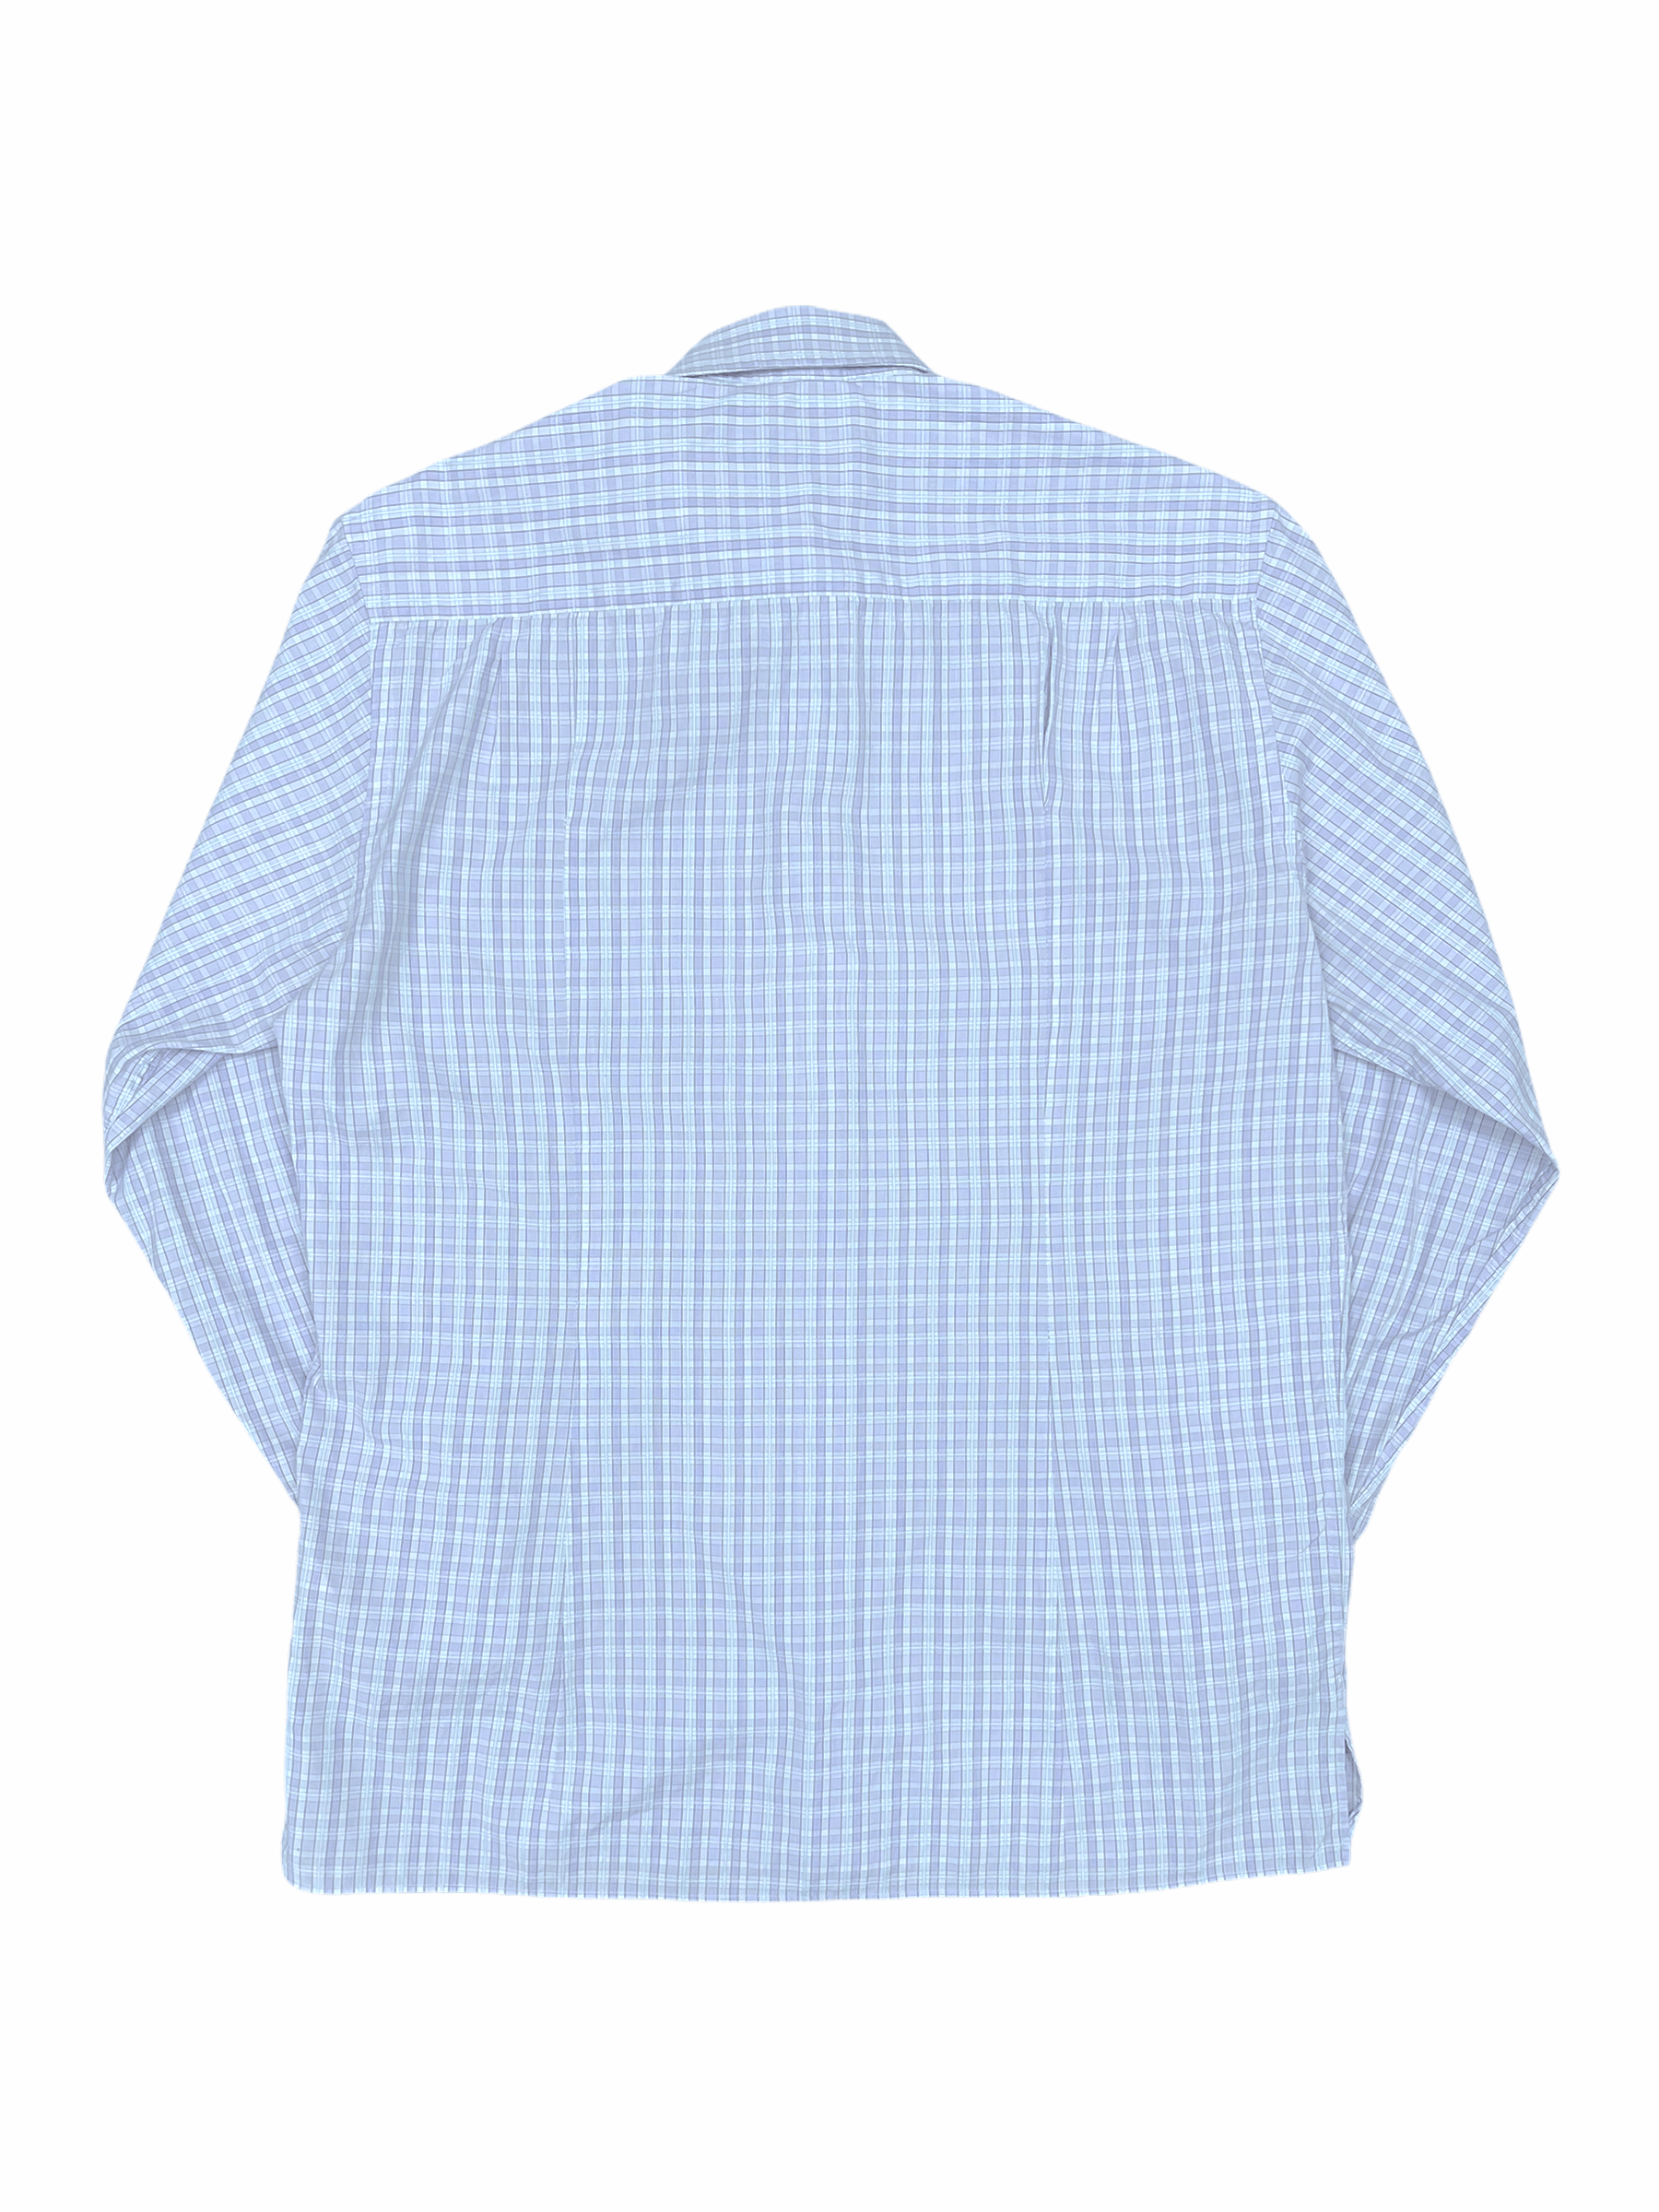 Ermenegildo Zegna Light Blue Check Dress Shirt—Genuine Design luxury consignment